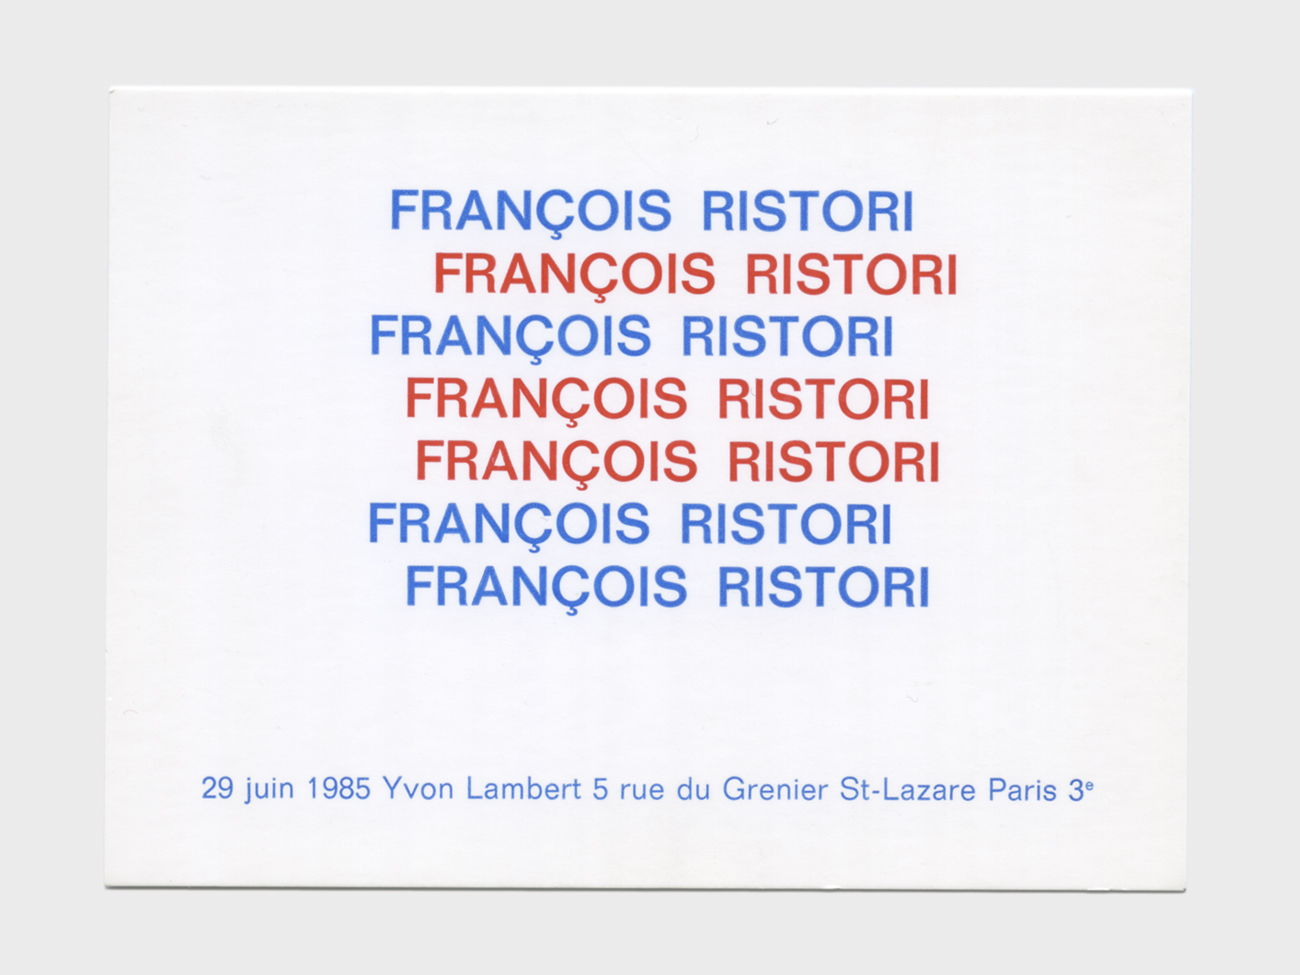 Francois-Ristori-expo-1985-carton